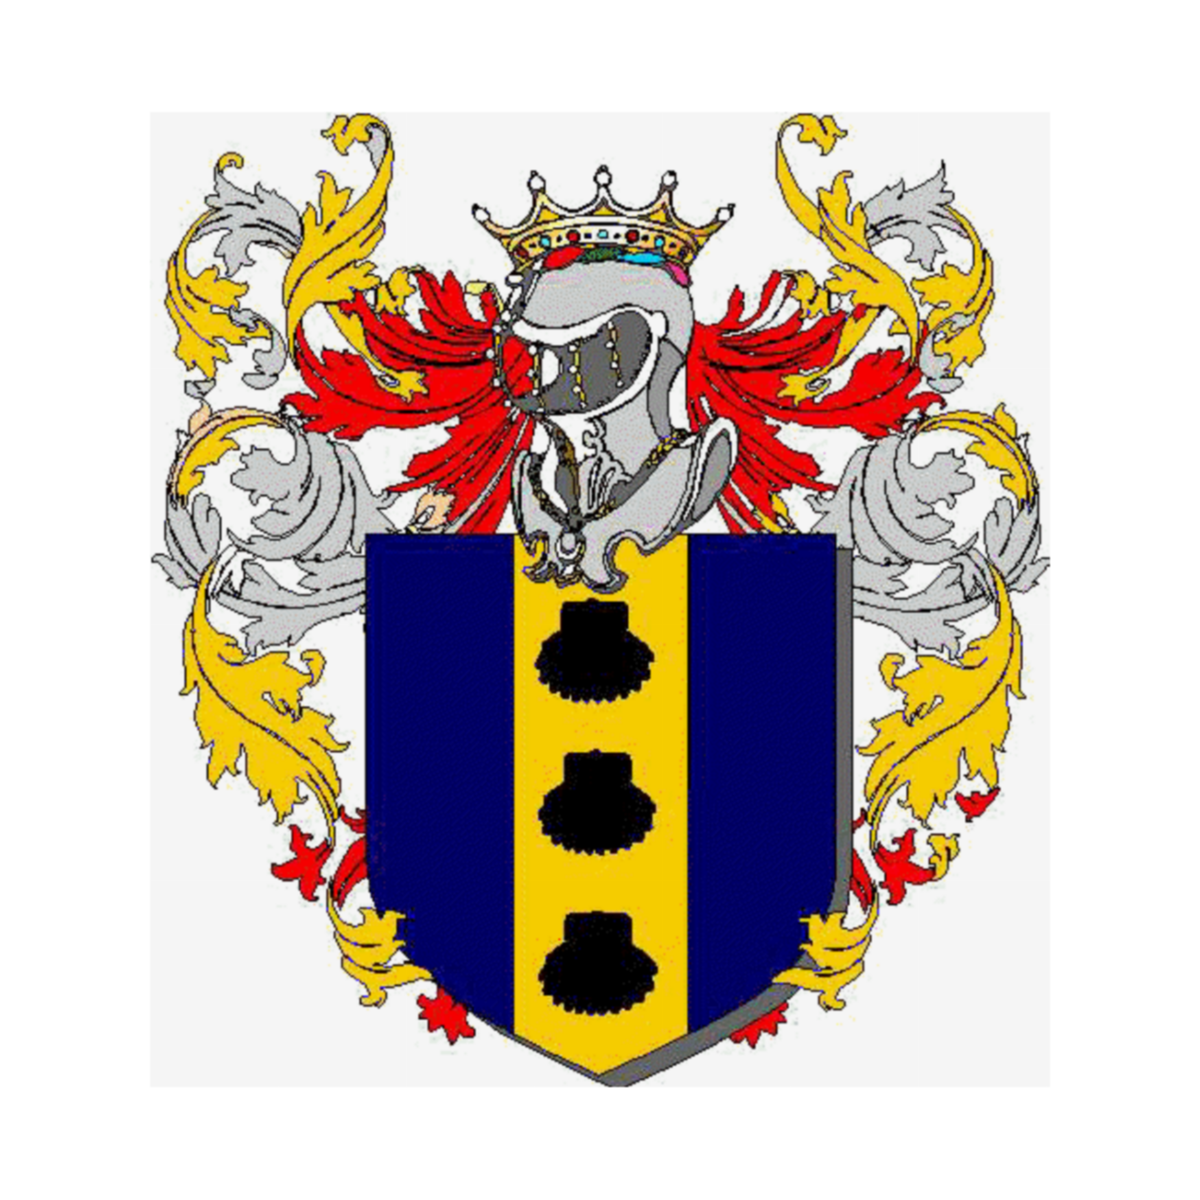 Wappen der Familie Capalti Ercolani